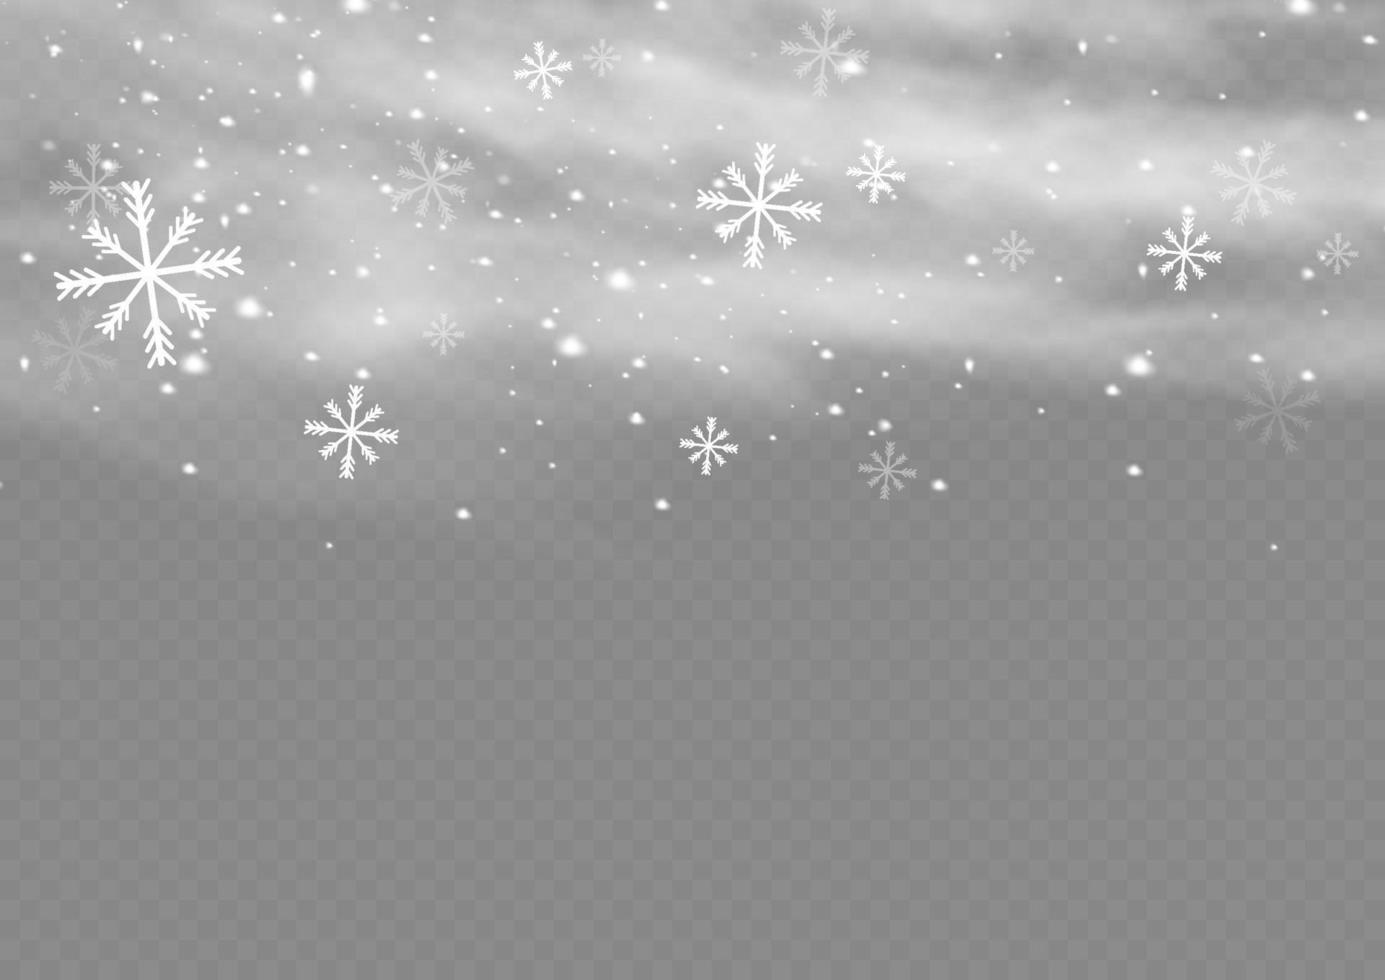 snö och vind. vit lutning dekorativ element.vector illustration. vinter- och snö med dimma. vind och dimma. vektor